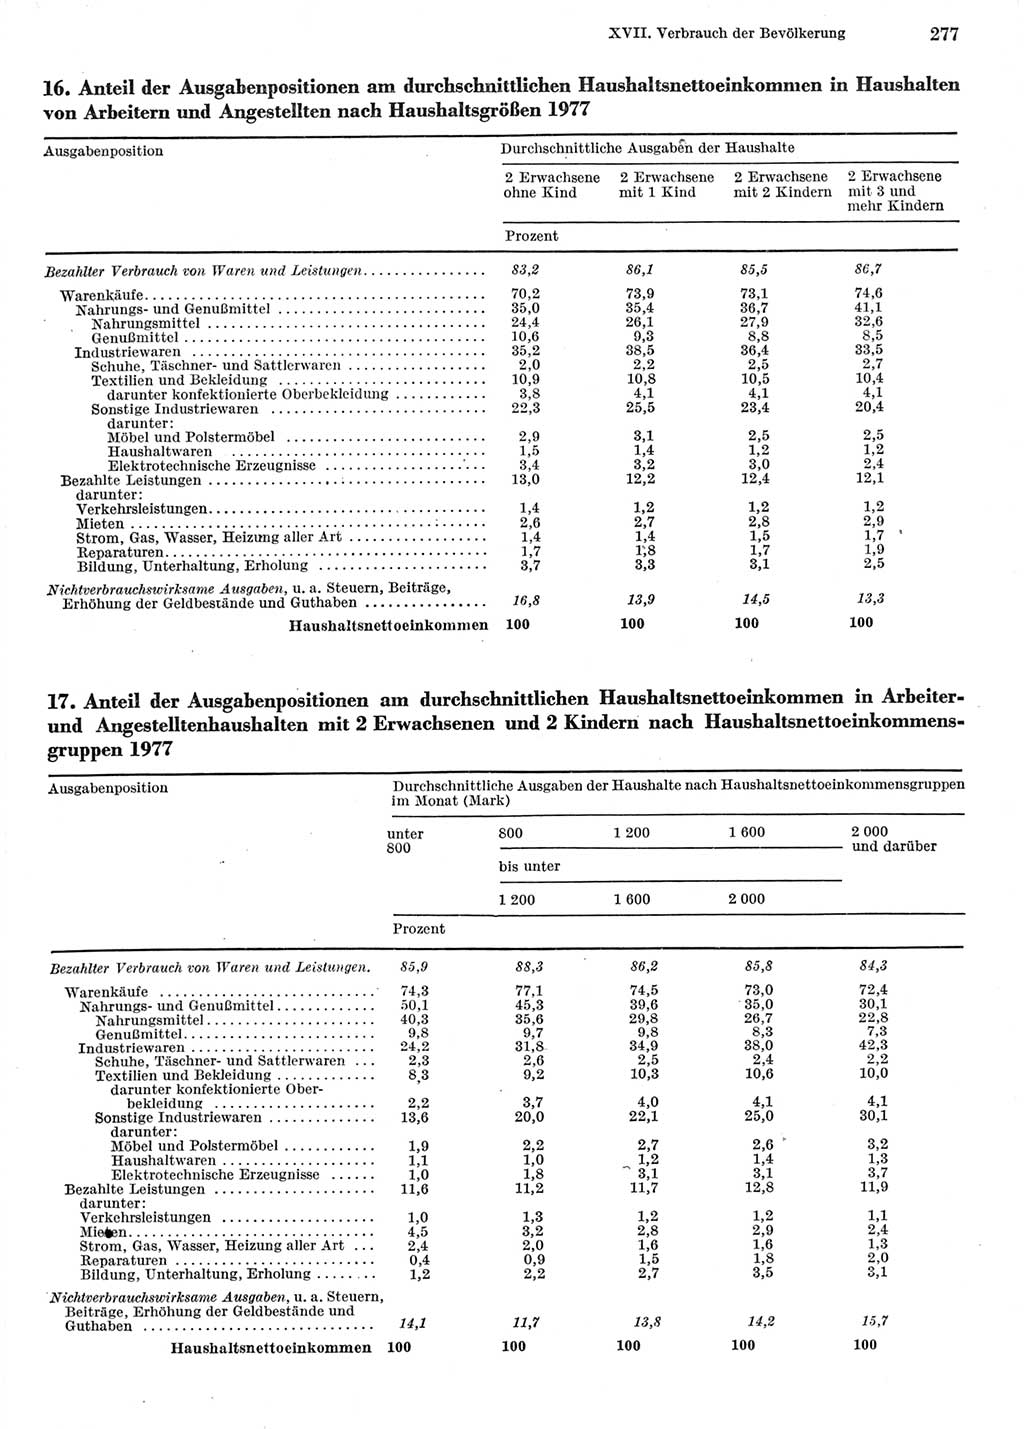 Statistisches Jahrbuch der Deutschen Demokratischen Republik (DDR) 1978, Seite 277 (Stat. Jb. DDR 1978, S. 277)